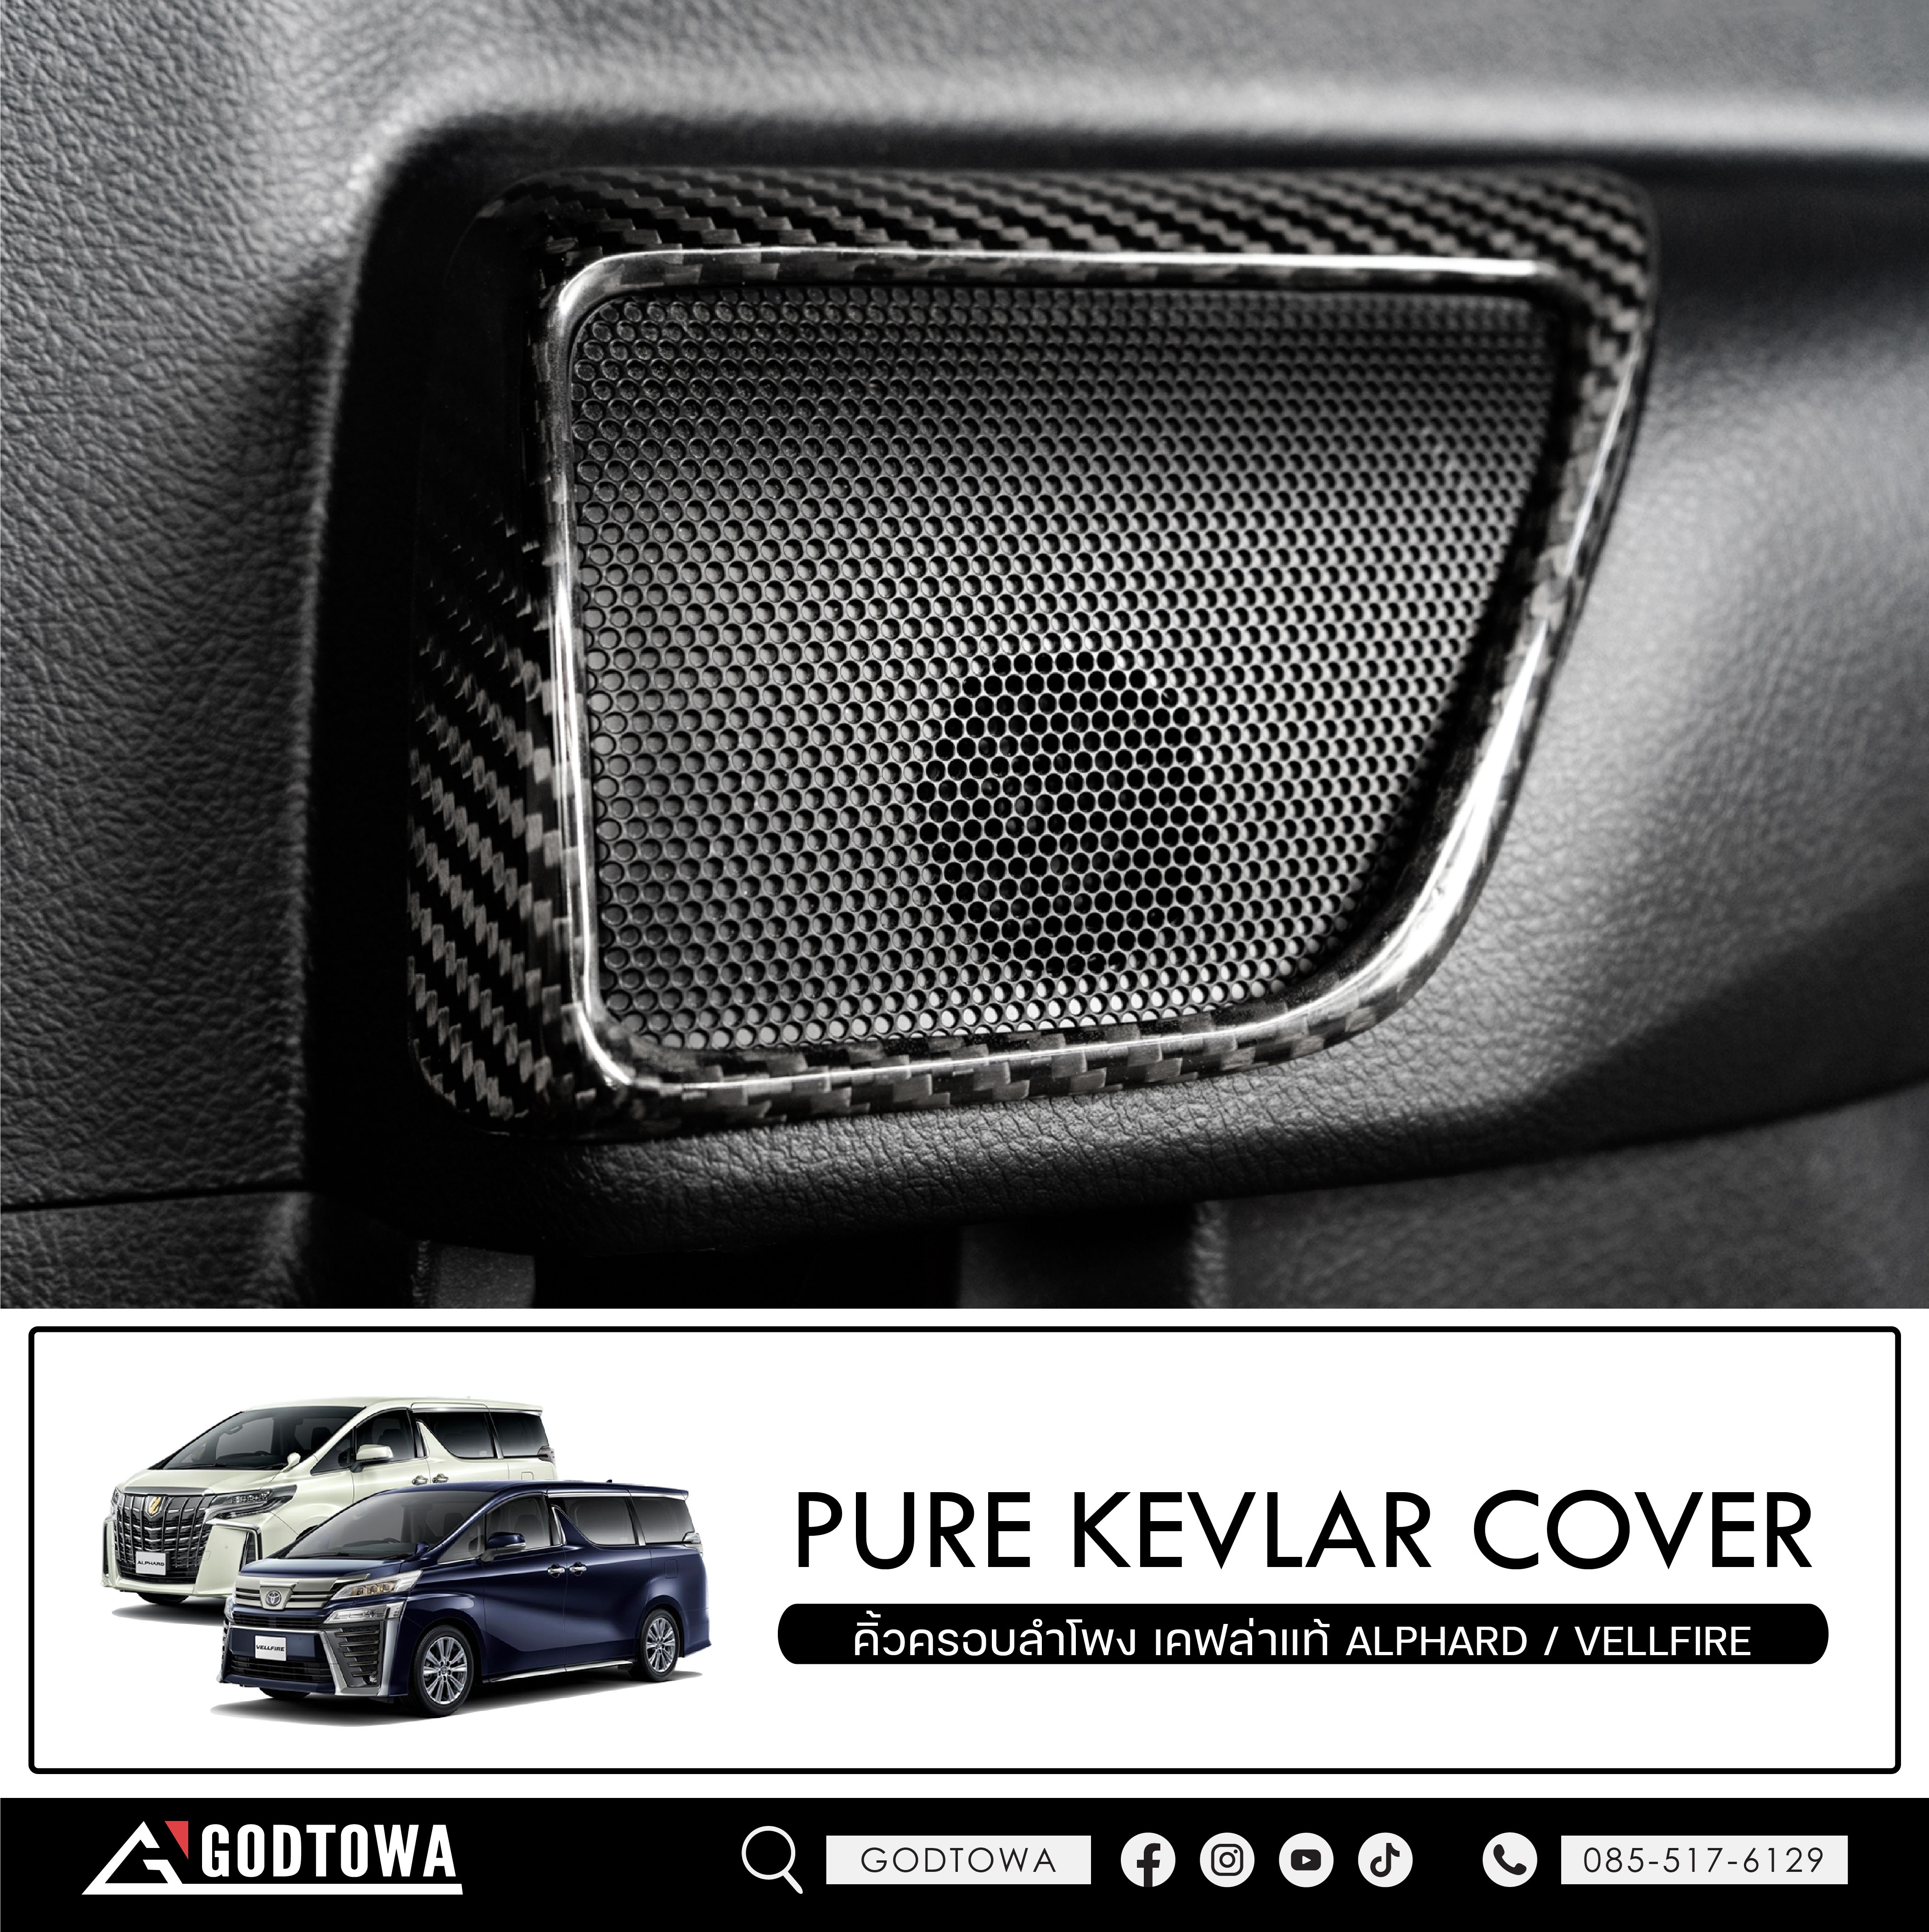 คิ้วครอบลำโพง เคฟล่าแท้ สำหรับ รถยนต์ ALPHARD / VELLFIRE 30 รุ่นปี 2015-2022 PURE KEVLAR COVER ครอบลำโพงเคฟล่า